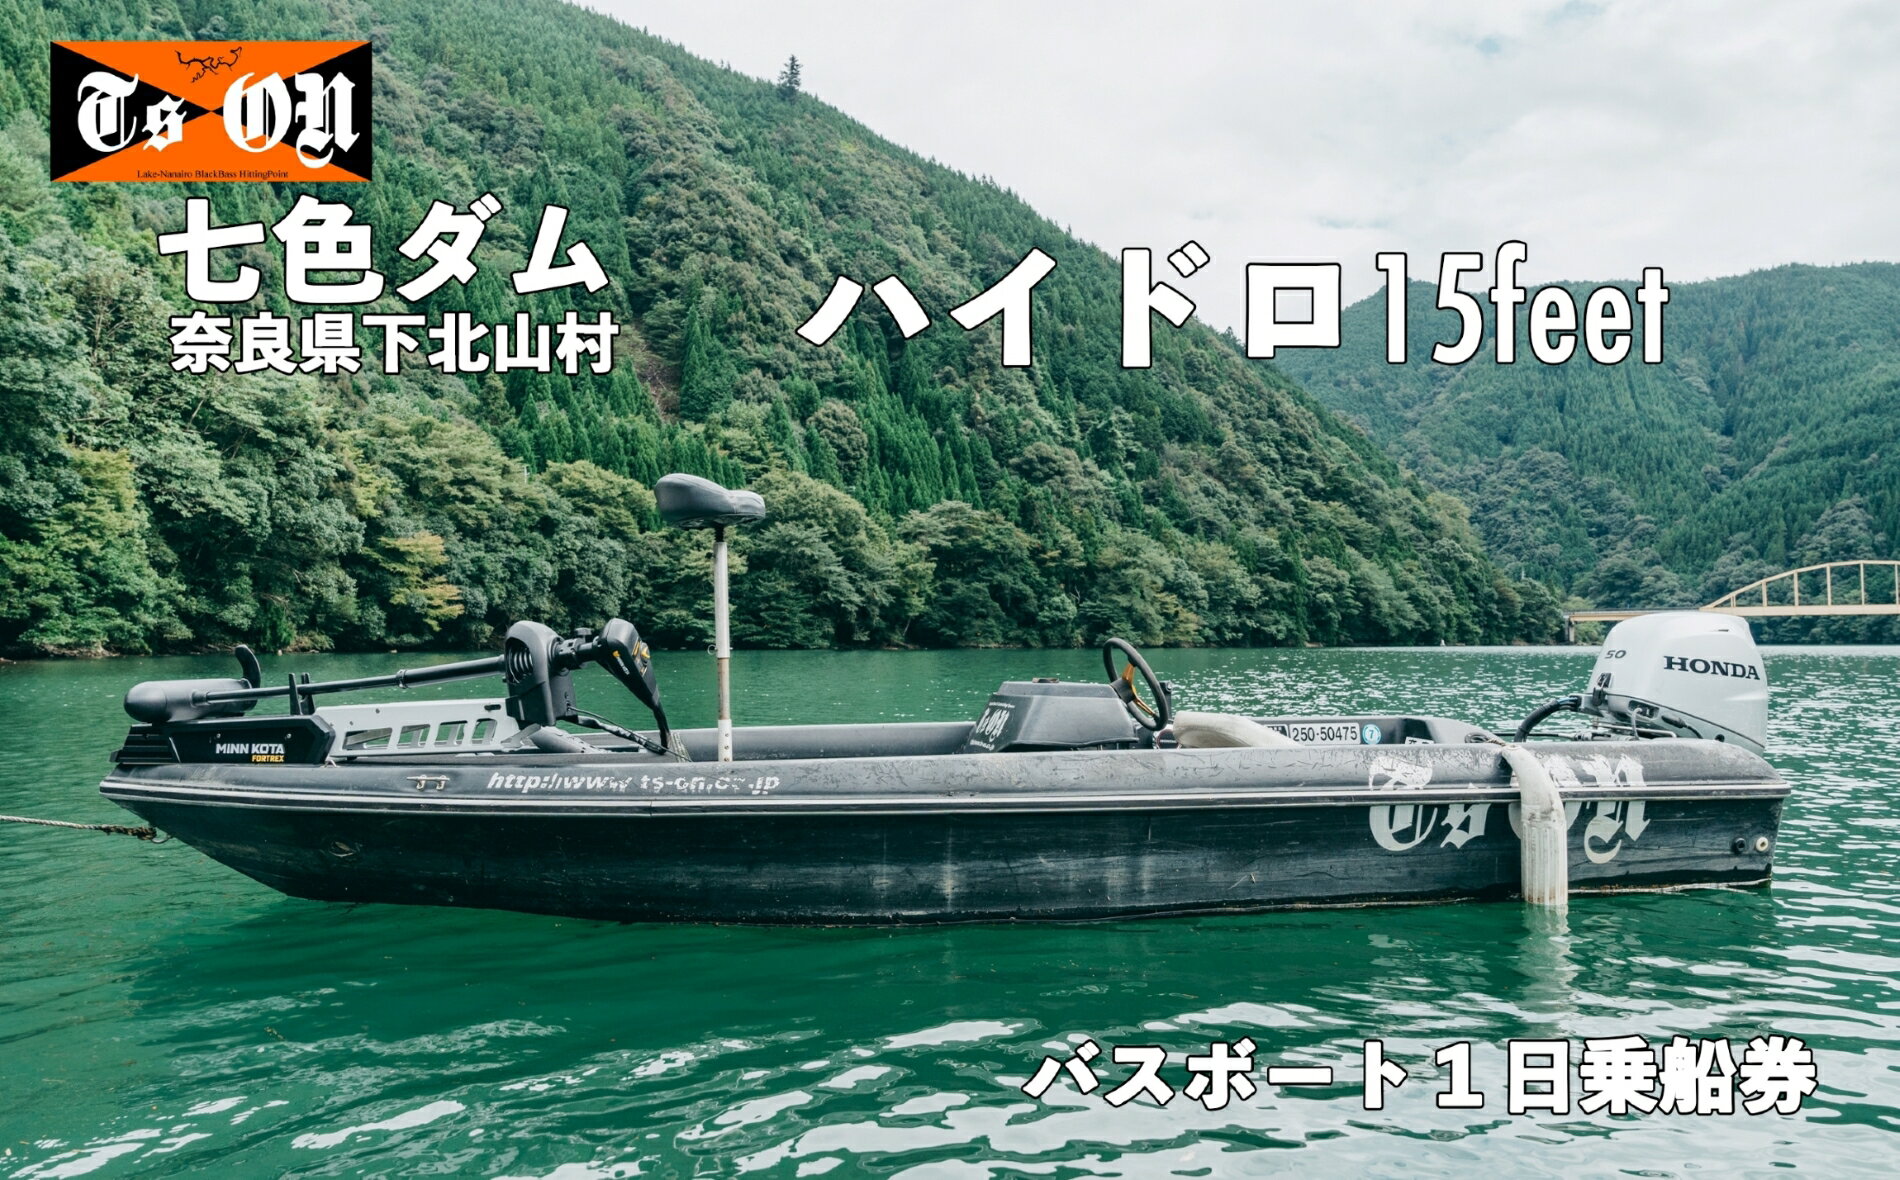 七色ダム レンタルボート[ハイドロ 15f 50馬力]ティーズオン バス釣り 1日乗船券